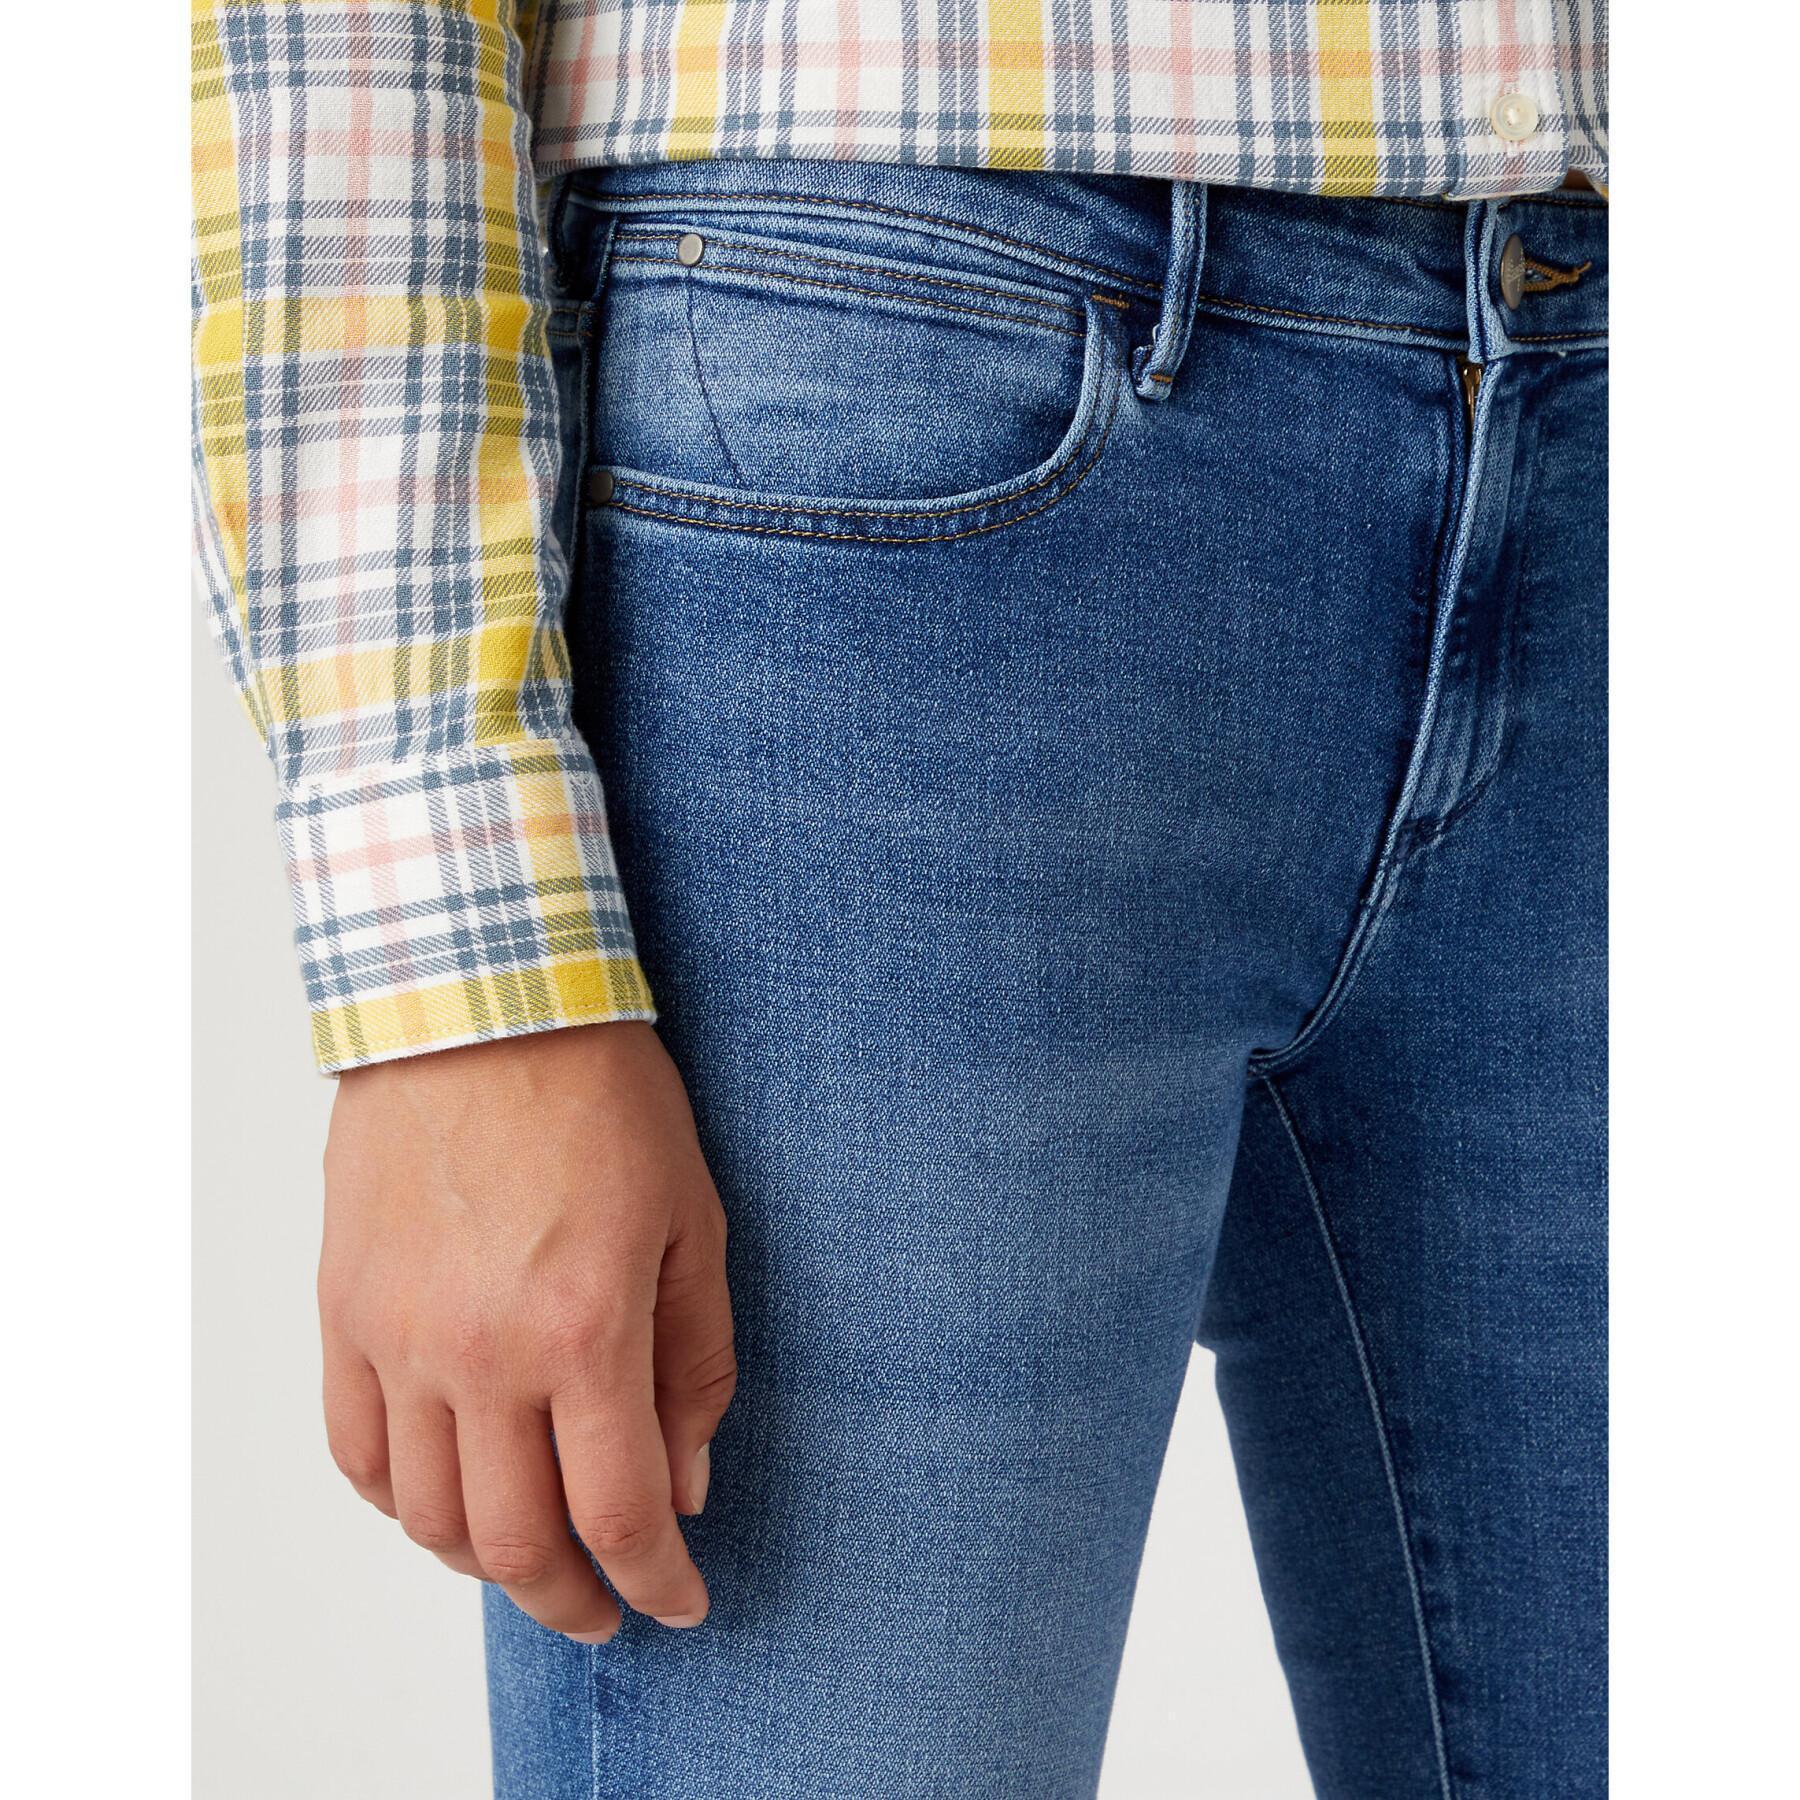 Jeans women's skinny Wrangler